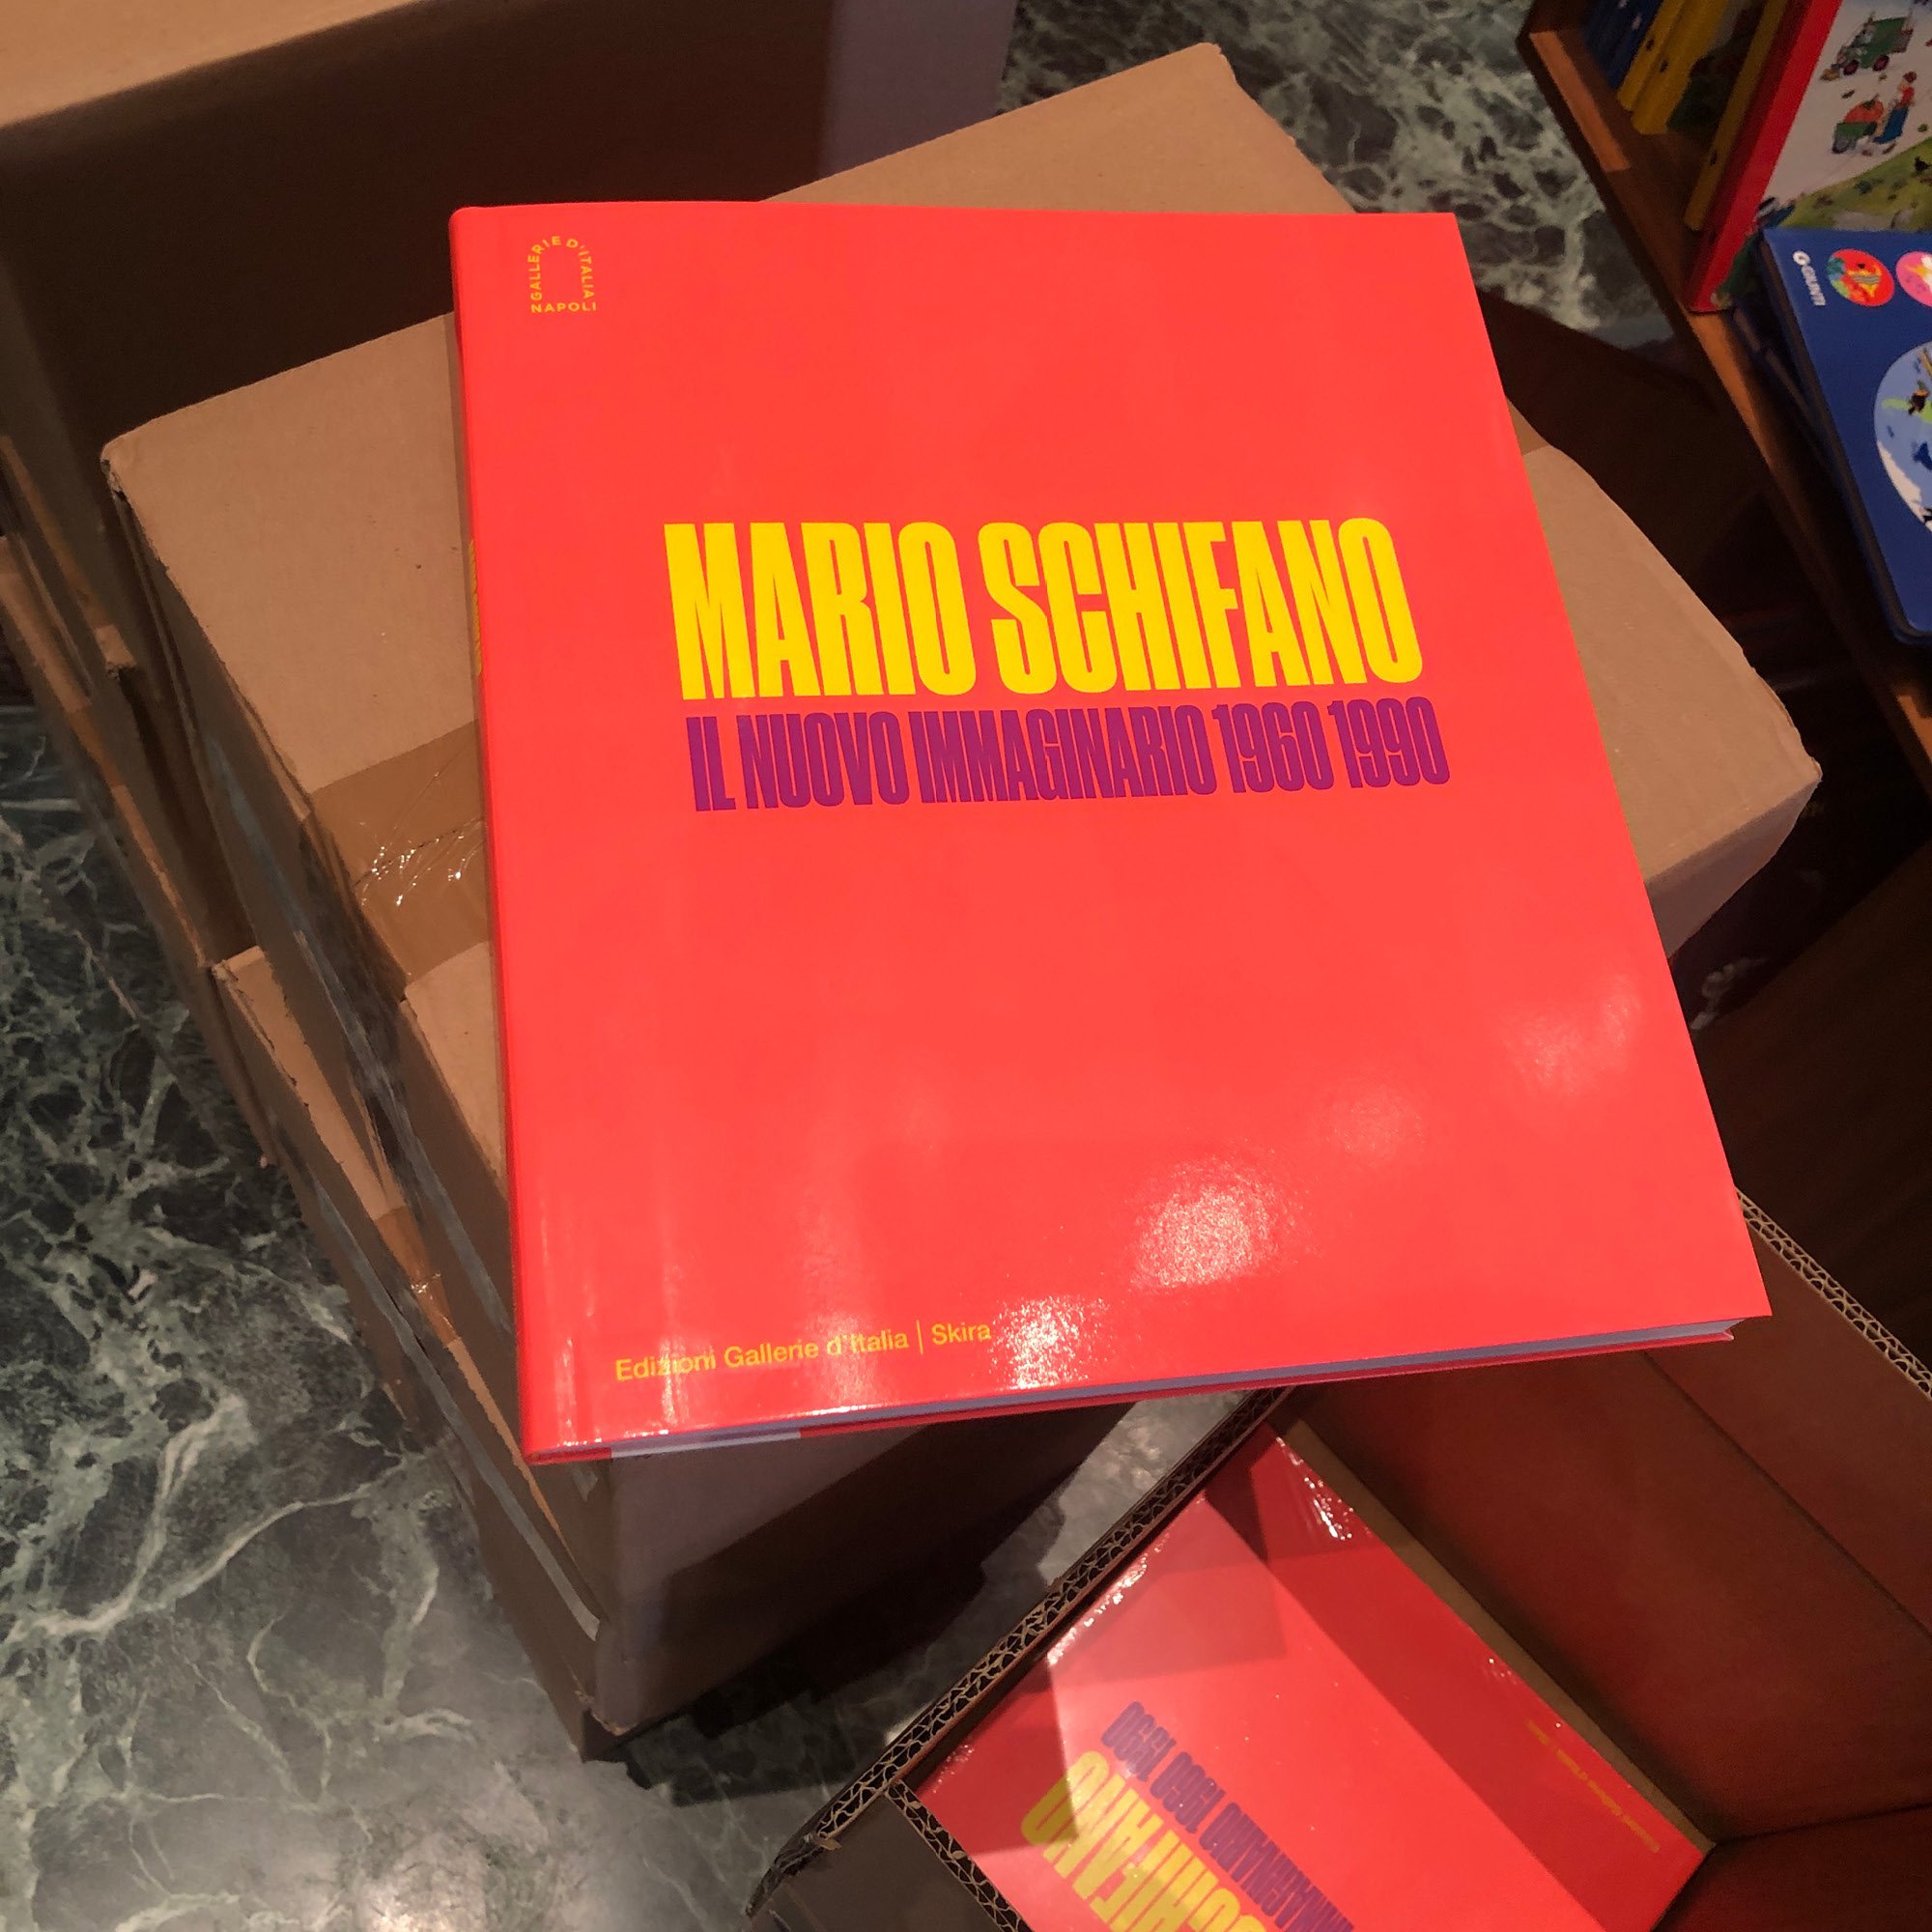 Mario-SchifanoIl-nuovo-immaginario-1960-1990-012 